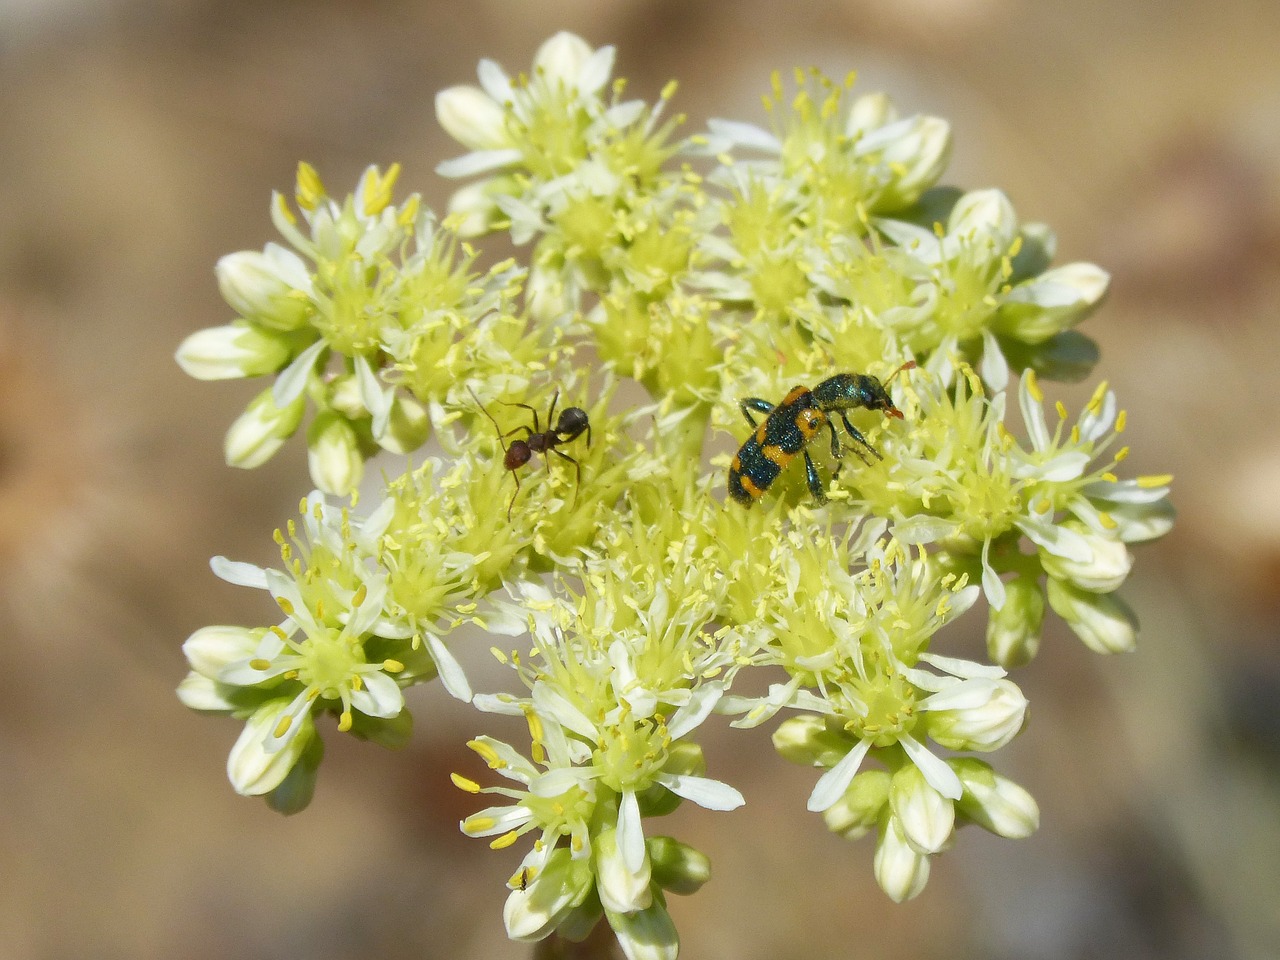 trichodes apiarius coleoptera beetle free photo